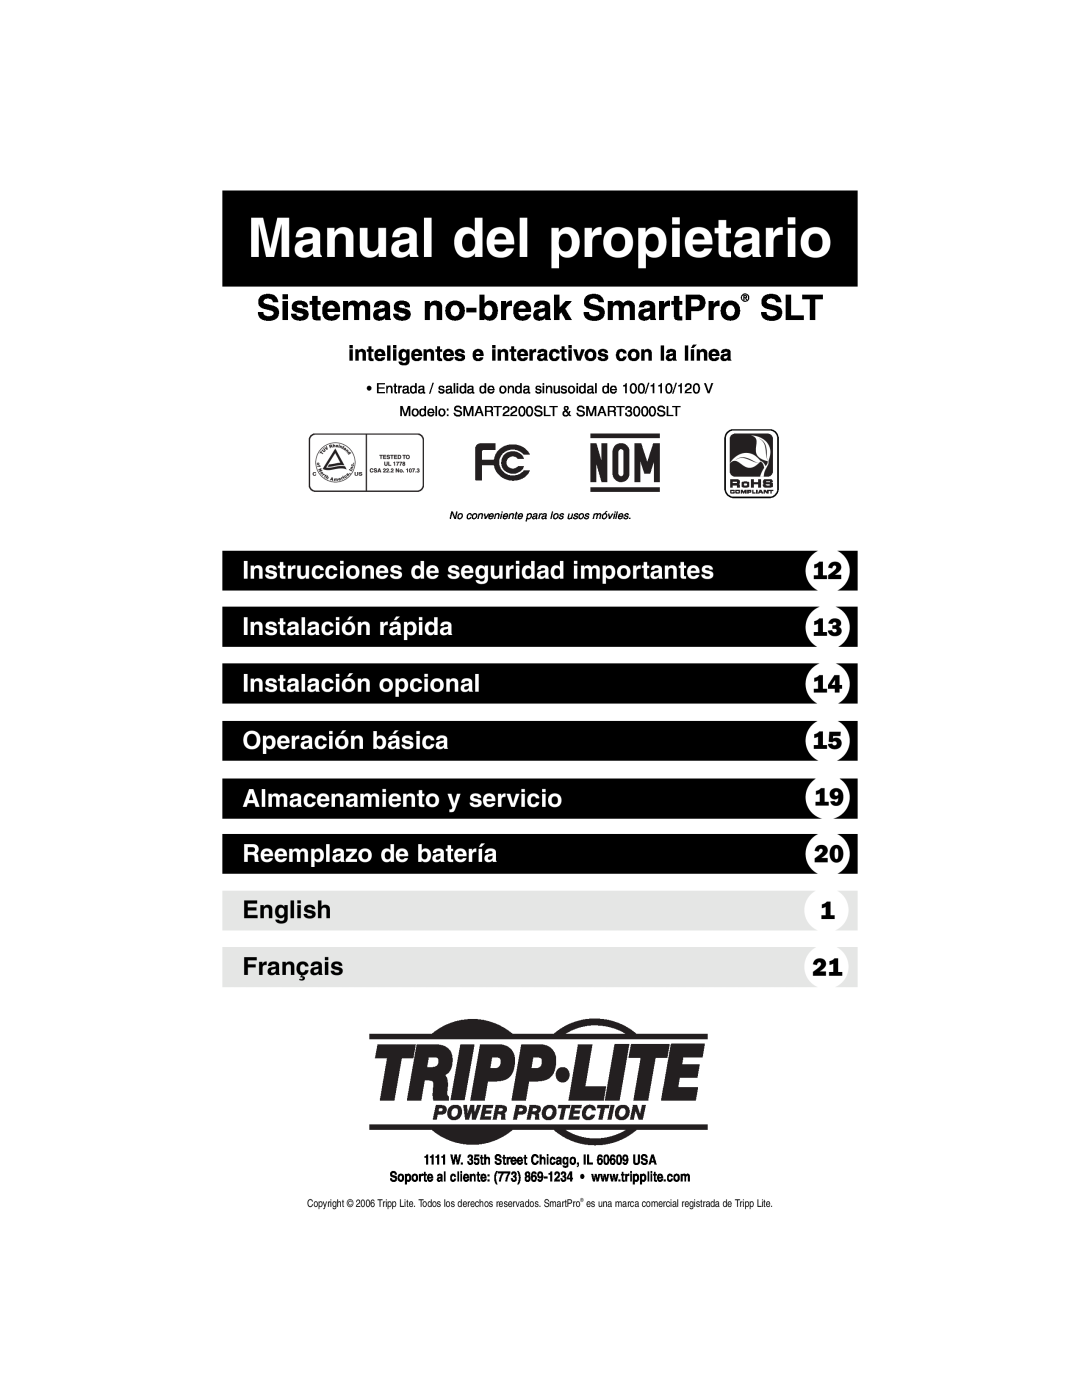 Tripp Lite SMART3000SLT Manual del propietario, Instrucciones de seguridad importantes, Instalación rápida, English 